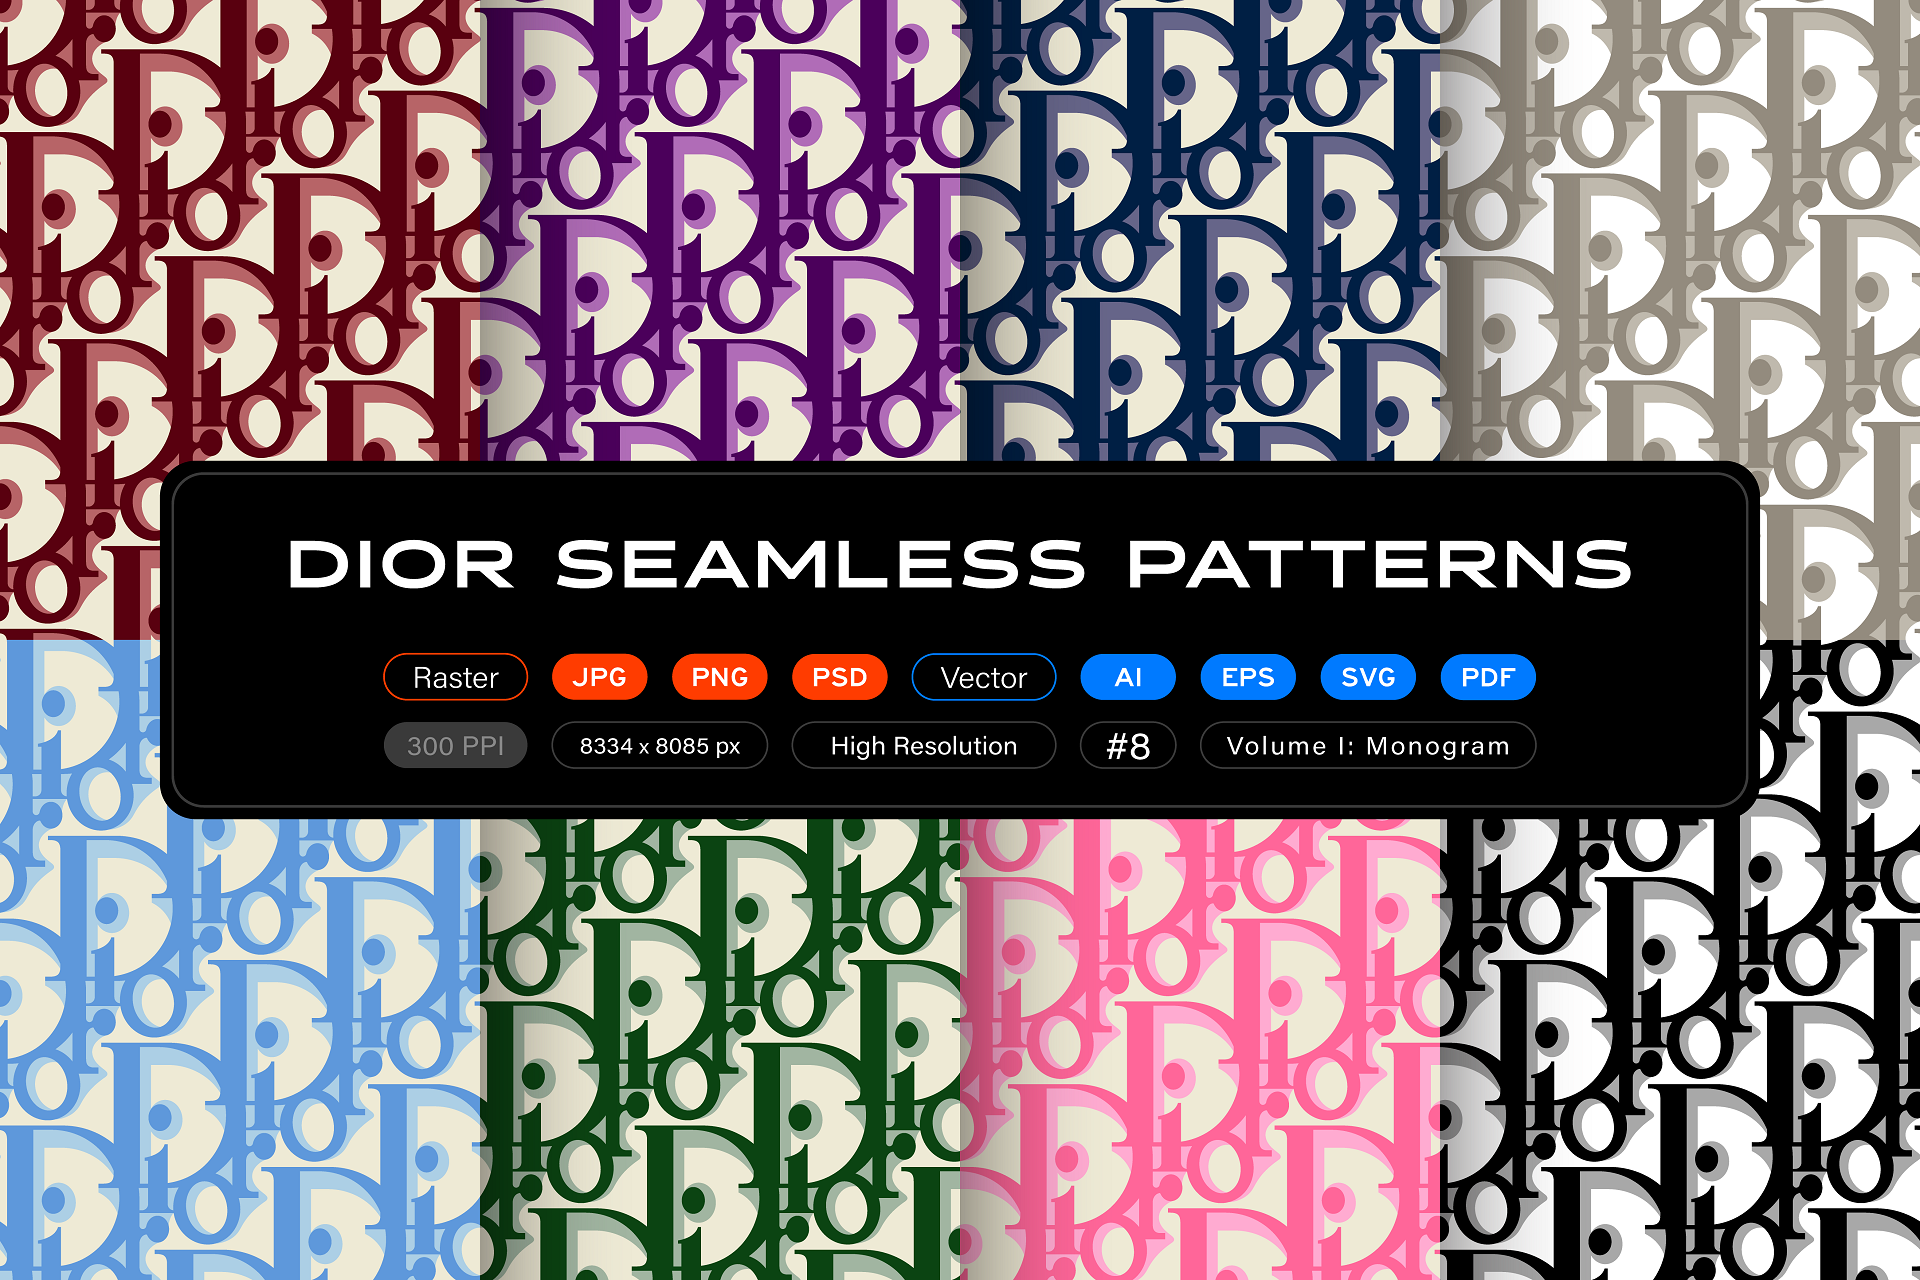 Dior Seamless Patterns, Vol. 1: Monogram by itsfarahbakhsh on DeviantArt